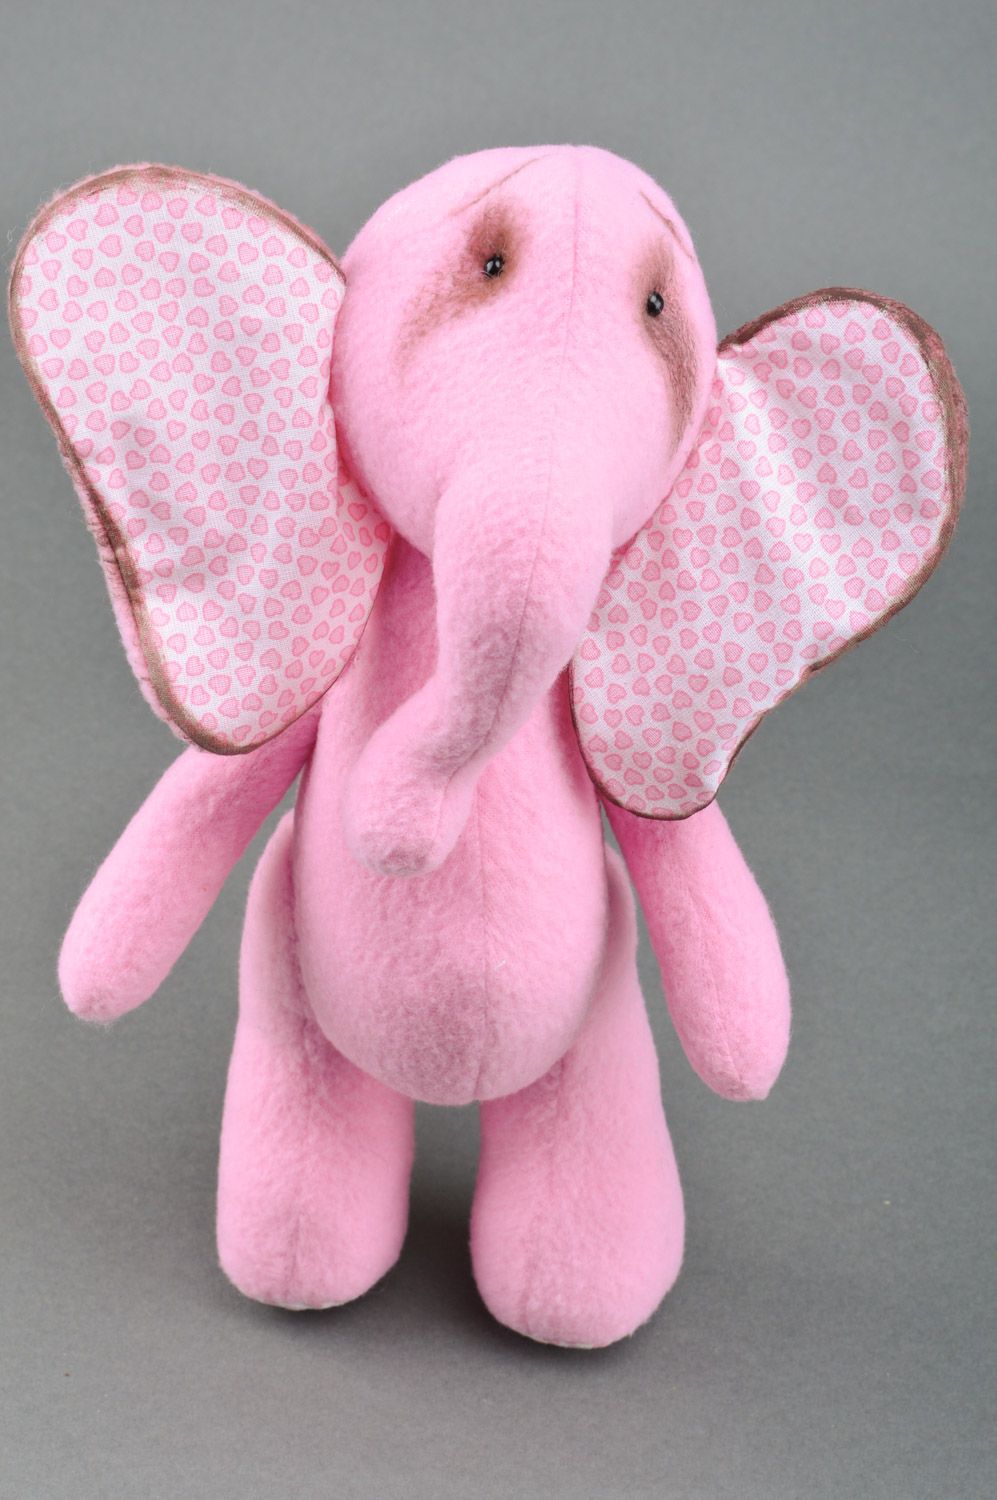 Мягкая игрушка ручной работы в виде розового слона текстильная мягкая веселая фото 2